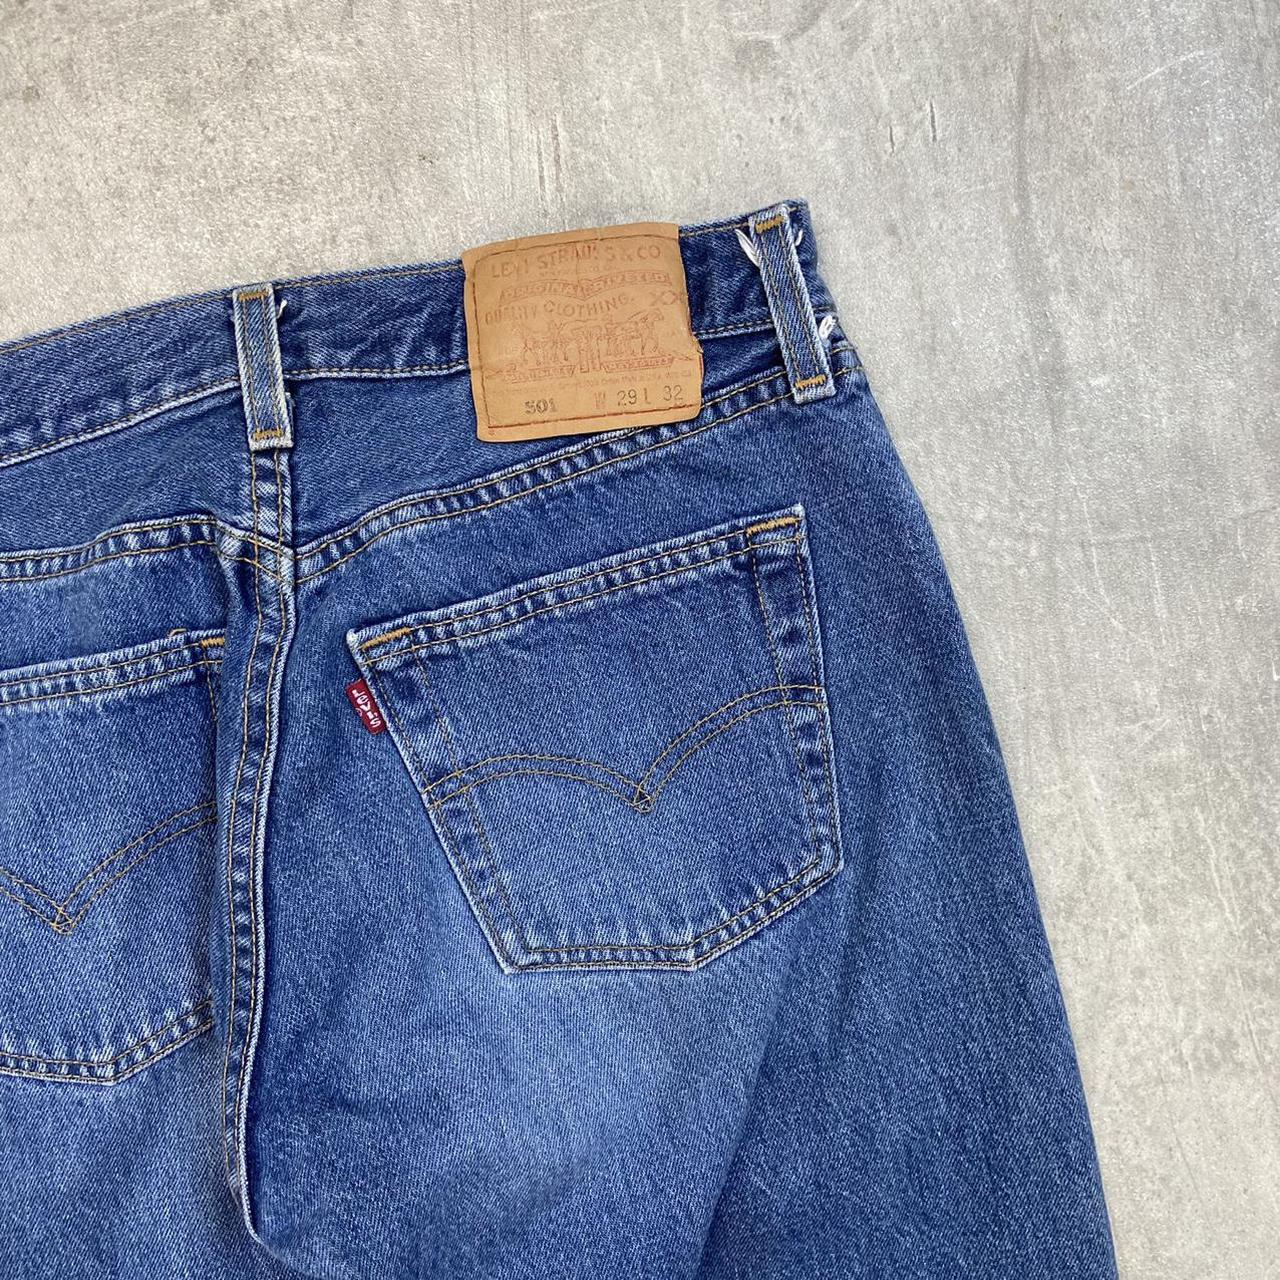 Vintage 90s Levi’s 501 denim jeans in a mid blue... - Depop